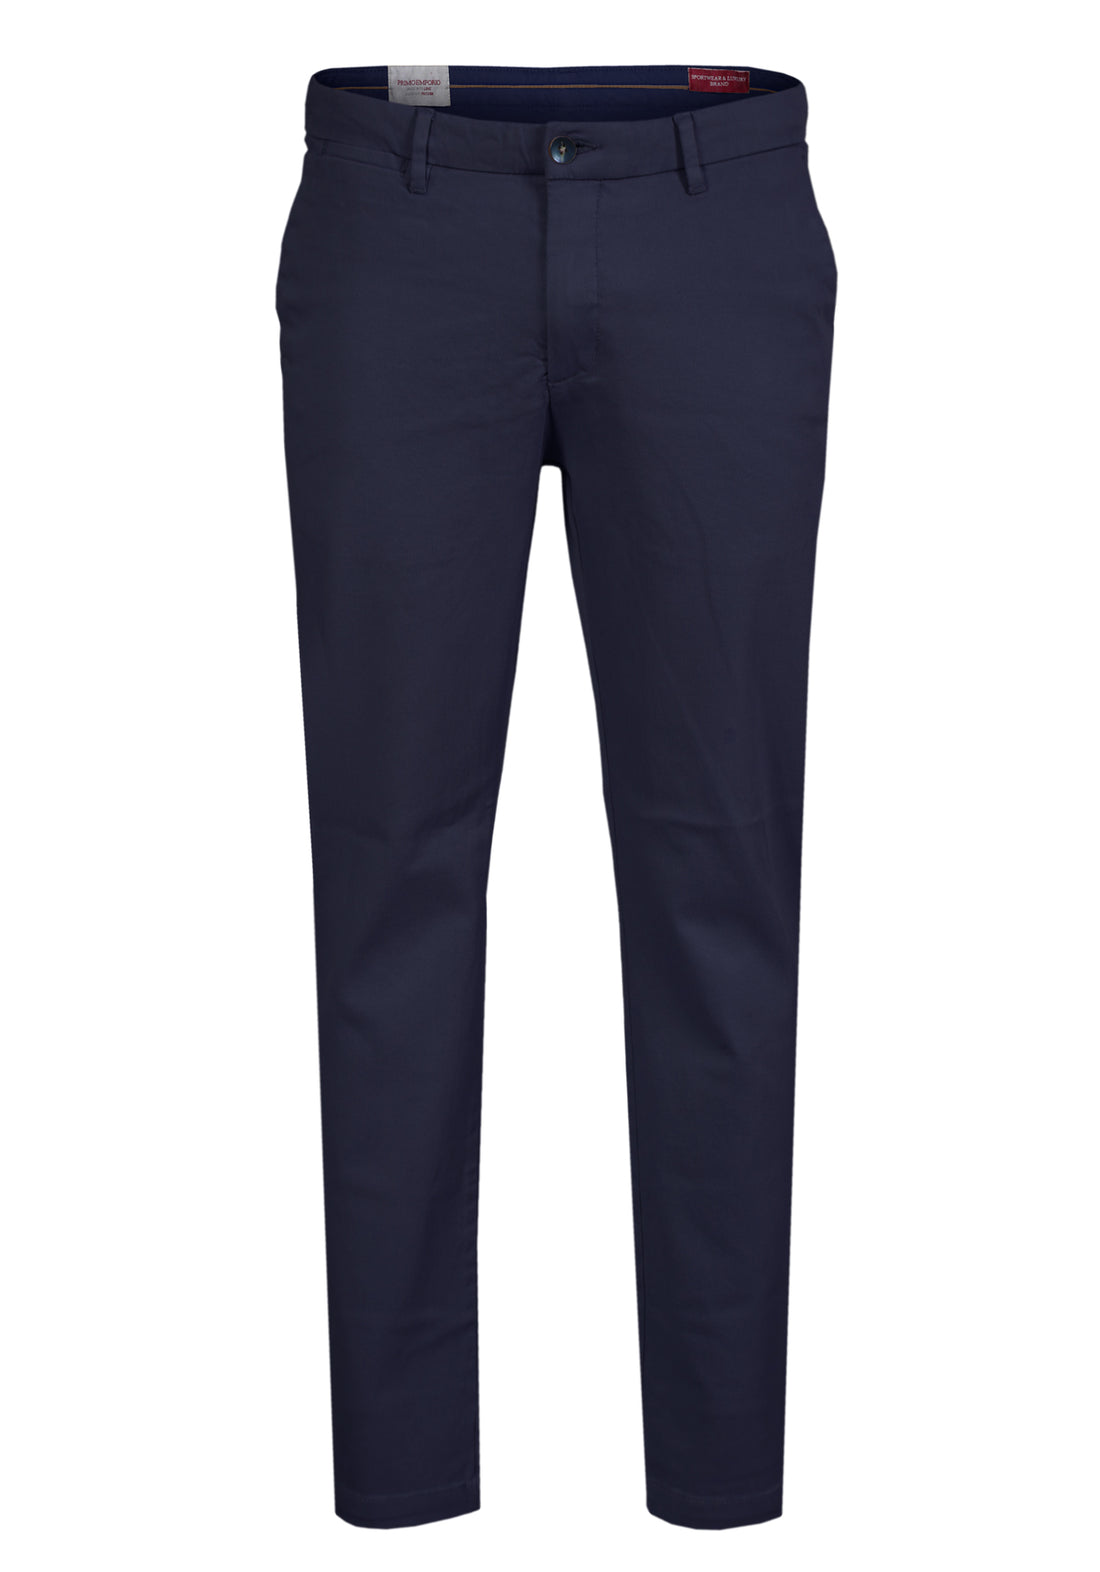 Pantalone Tasca America cotone Caldo Armaturato - Blue